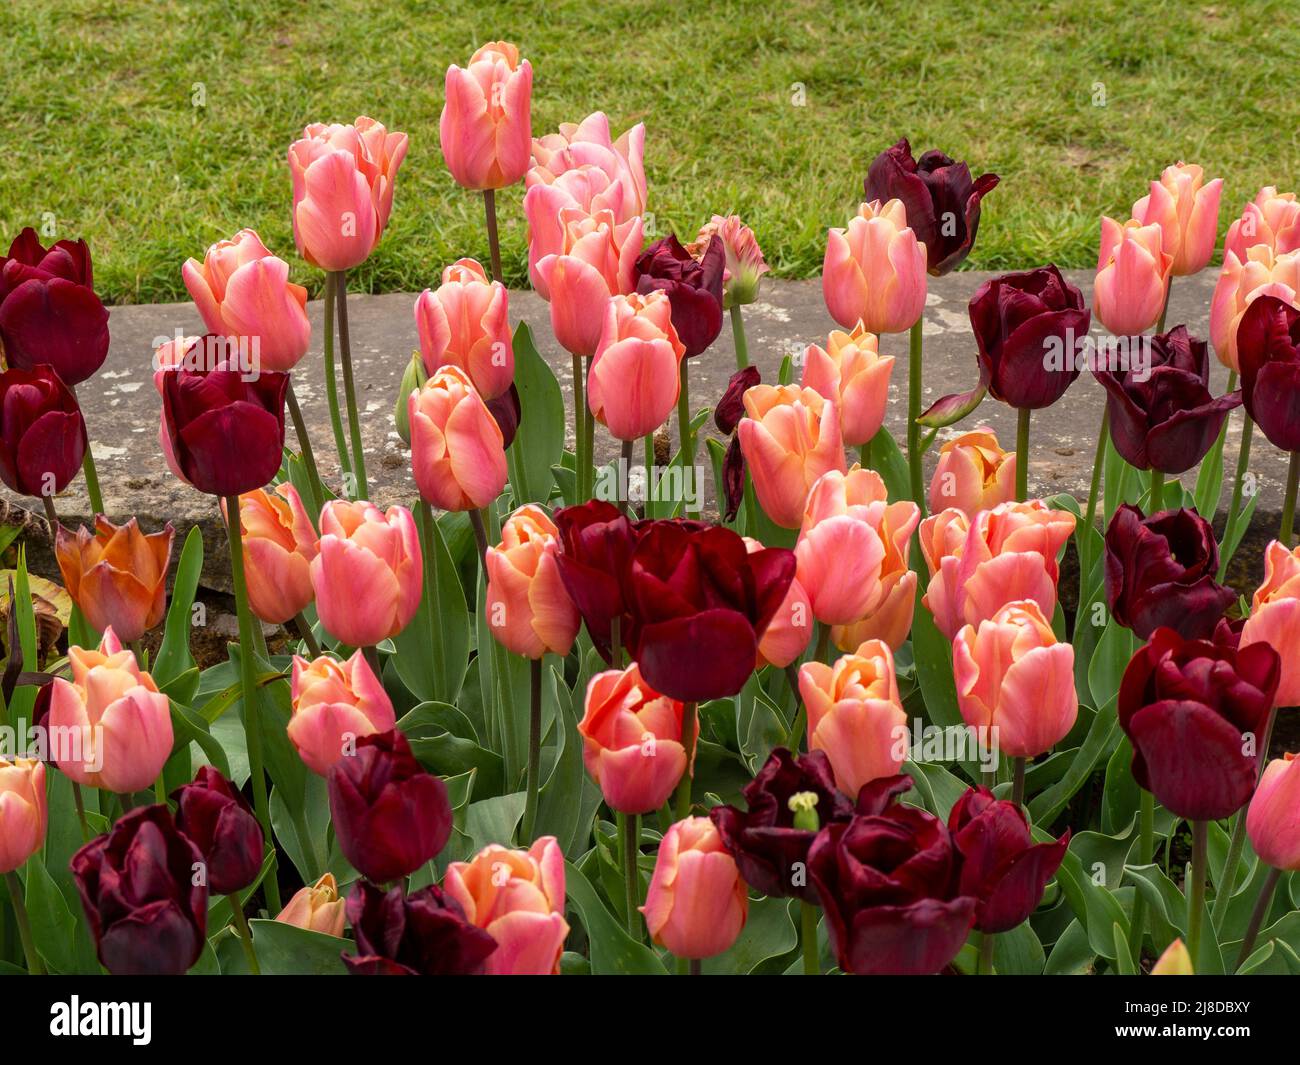 Chenies Manor Garden.Masse piantato tulipani nel giardino Sunken. Tulipa 'Ronaldo' e Tulipa 'Request' una miscela di borgogna e arancio pastello. Foto Stock